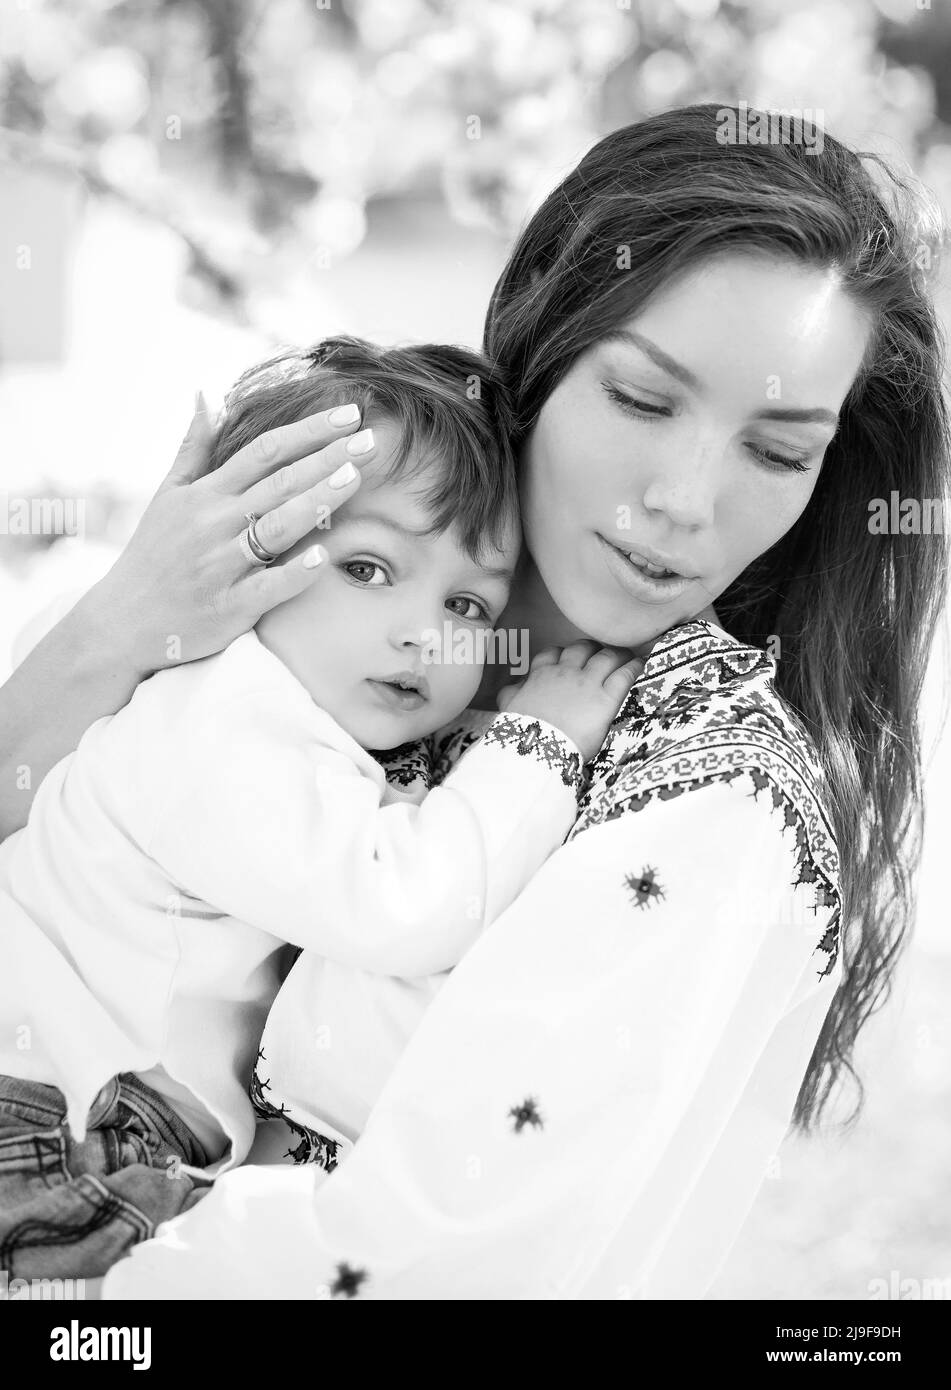 Foto in bianco e nero piccolo bambino sulle mani della madre. Ritratto di famiglia di due persone. Primavera paesaggio sfondo. Foto Stock